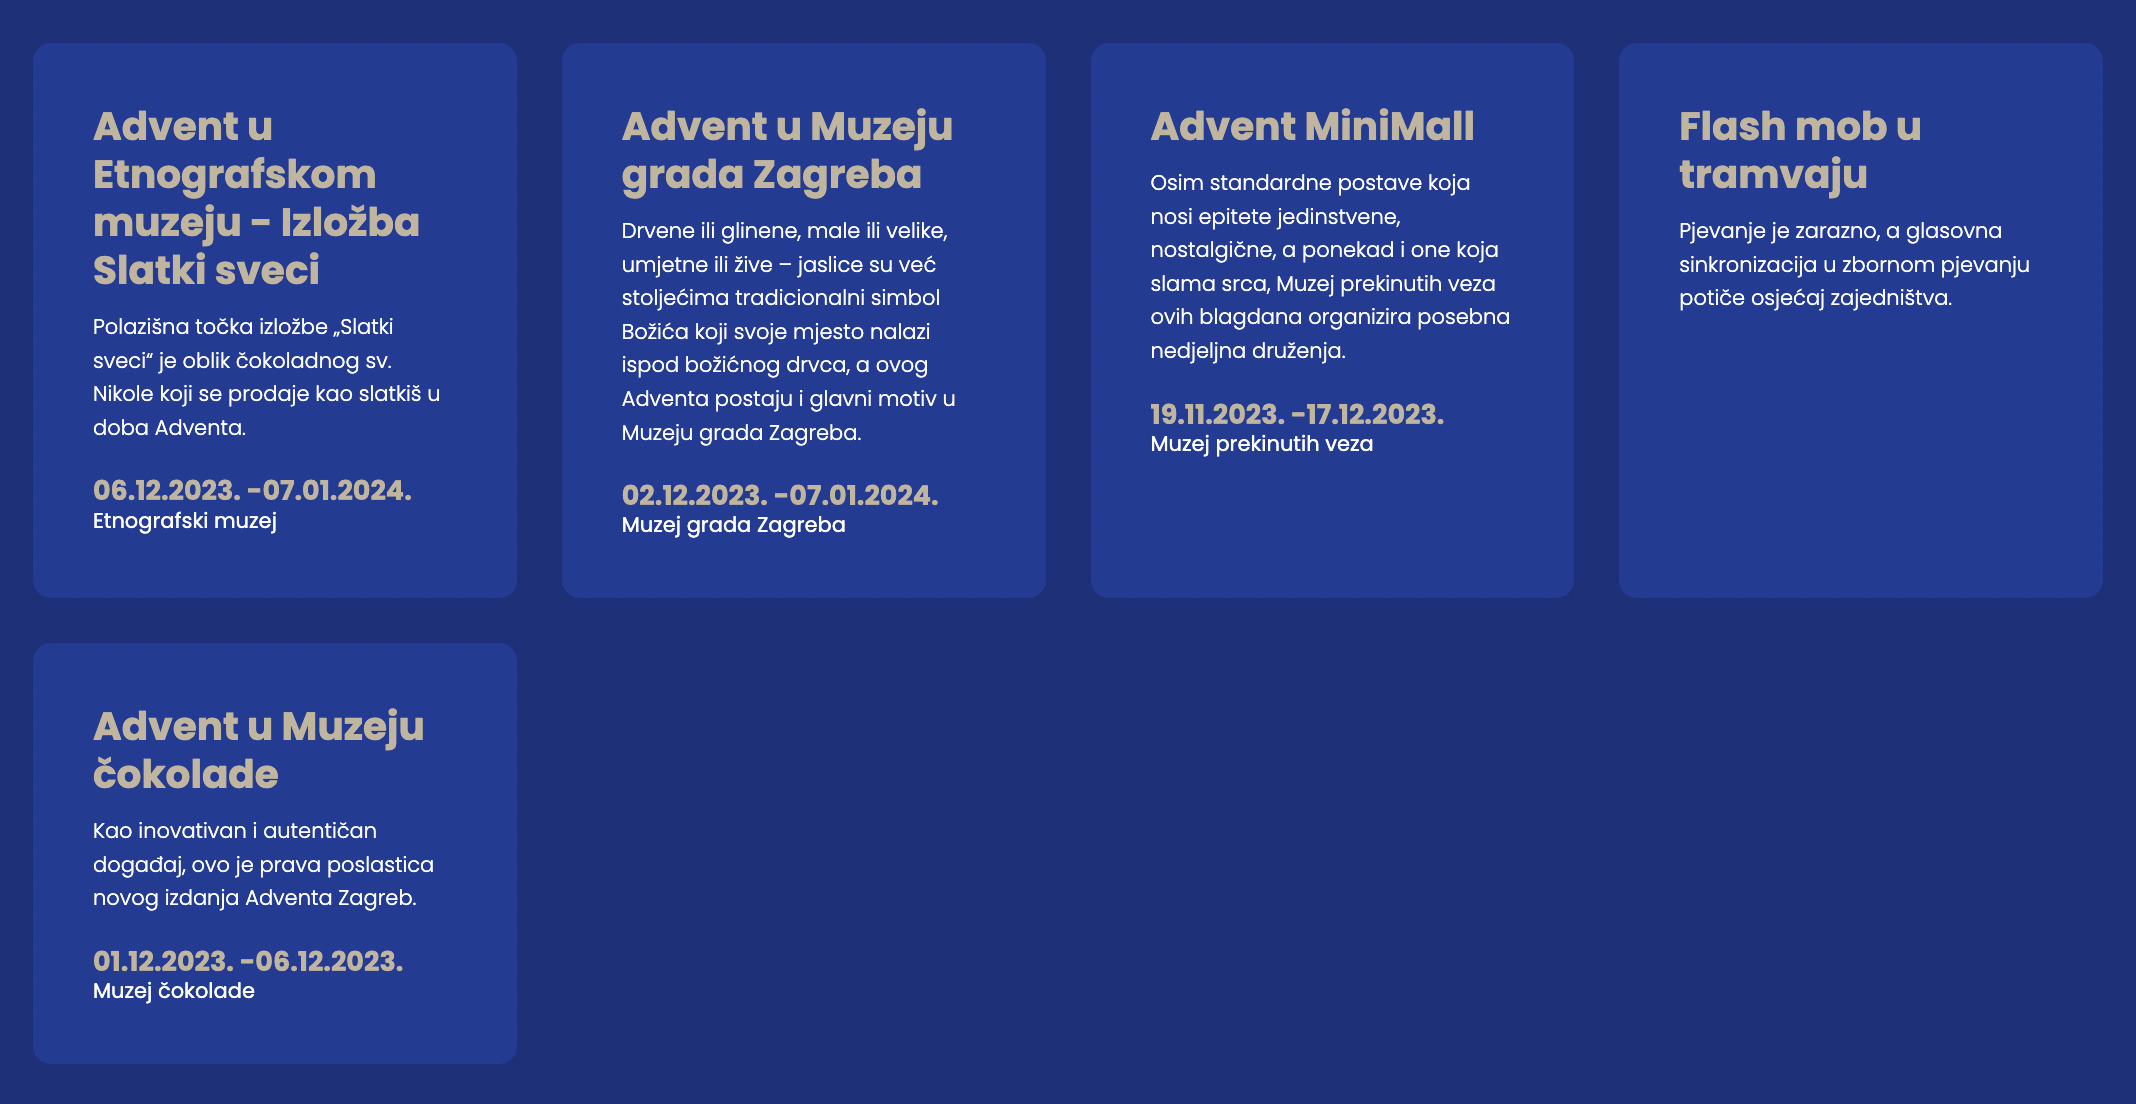 Advent u Zagrebu, lokacije, program, smještaj, događanja, kućice, gastro ponuda, gdje se sve održava, adrese